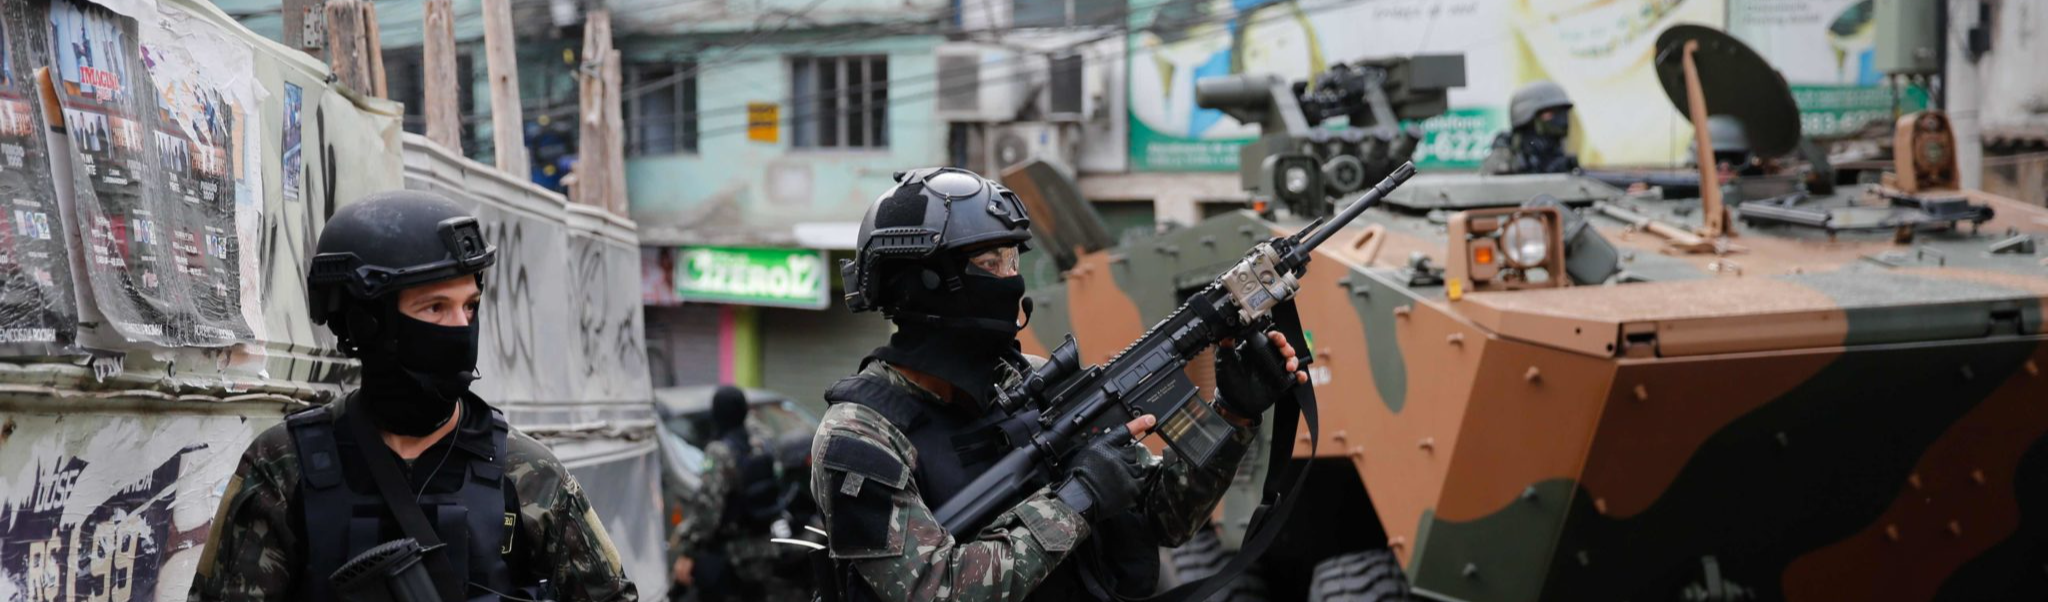 Militarização: Por que a conduta policial nos Estados Unidos e no Brasil é tão parecida?